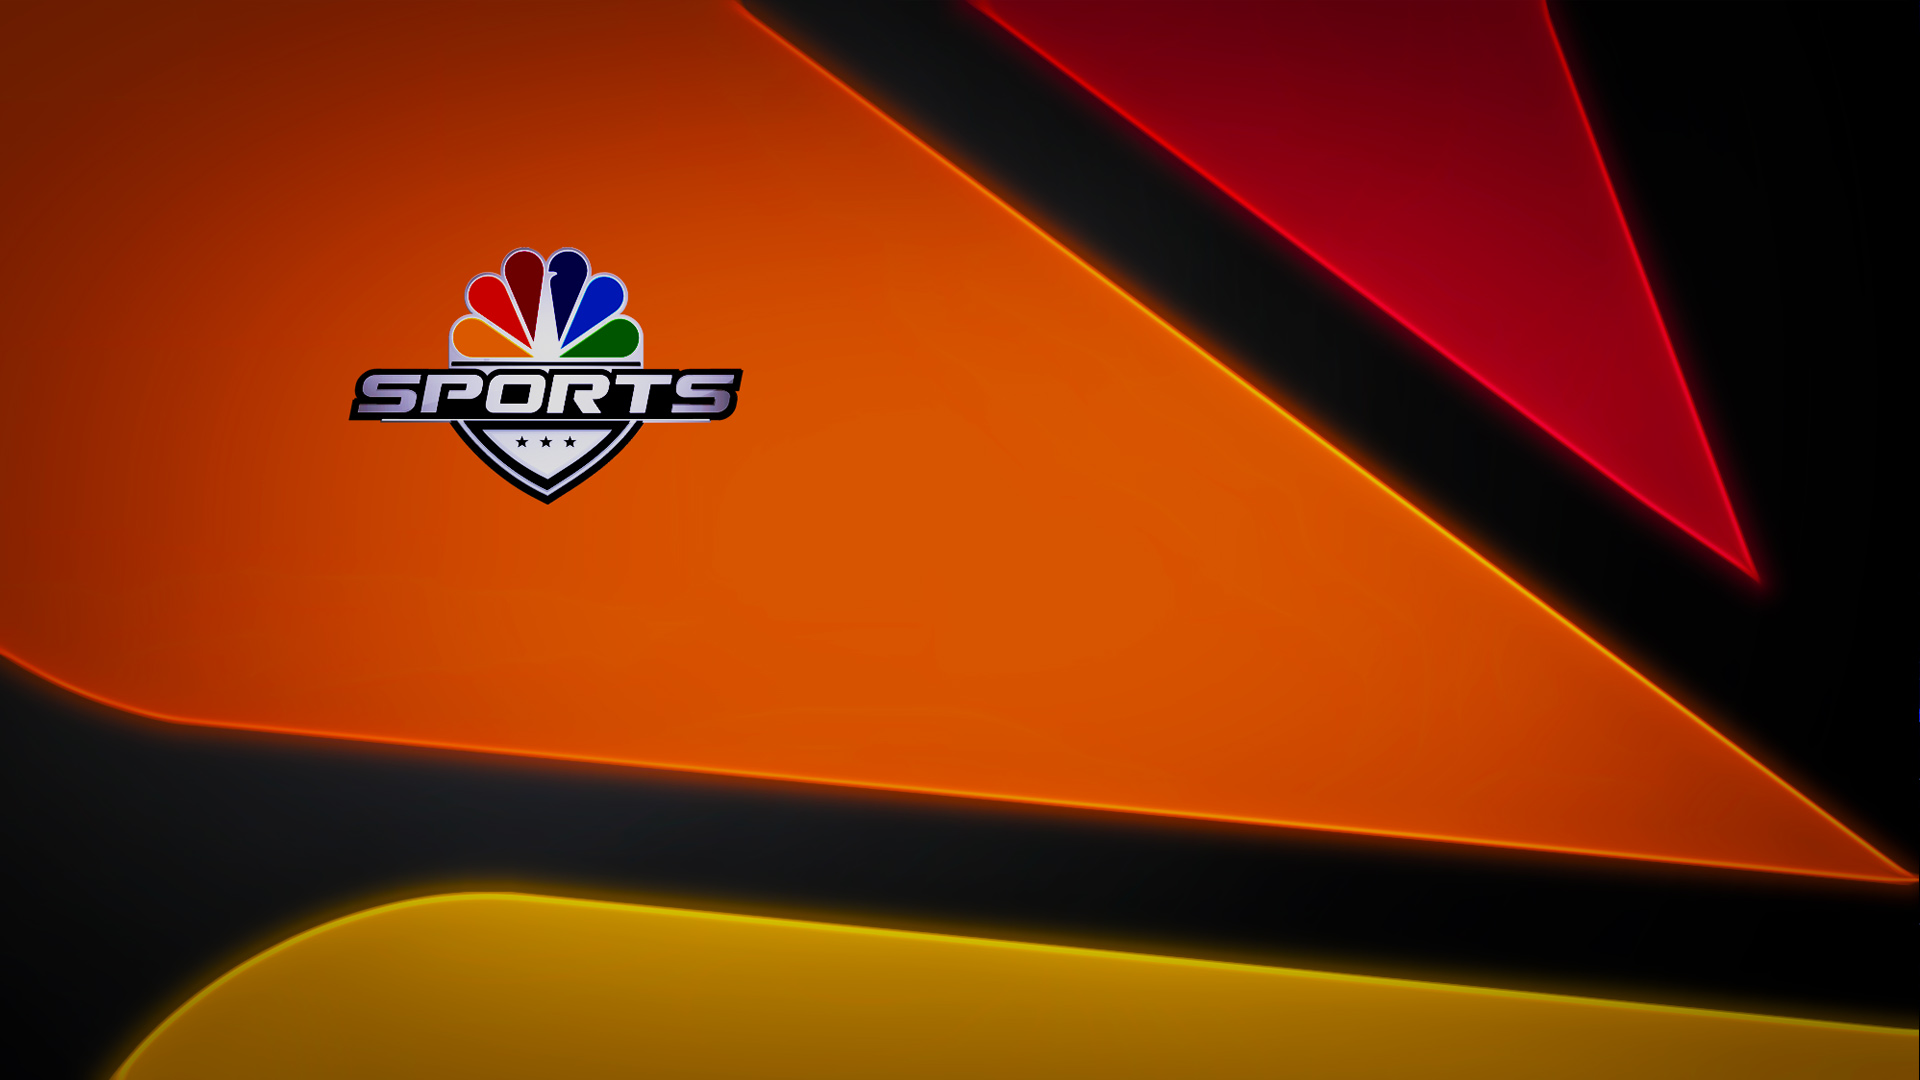 NBC_Sports-ALL_HD-4.jpg